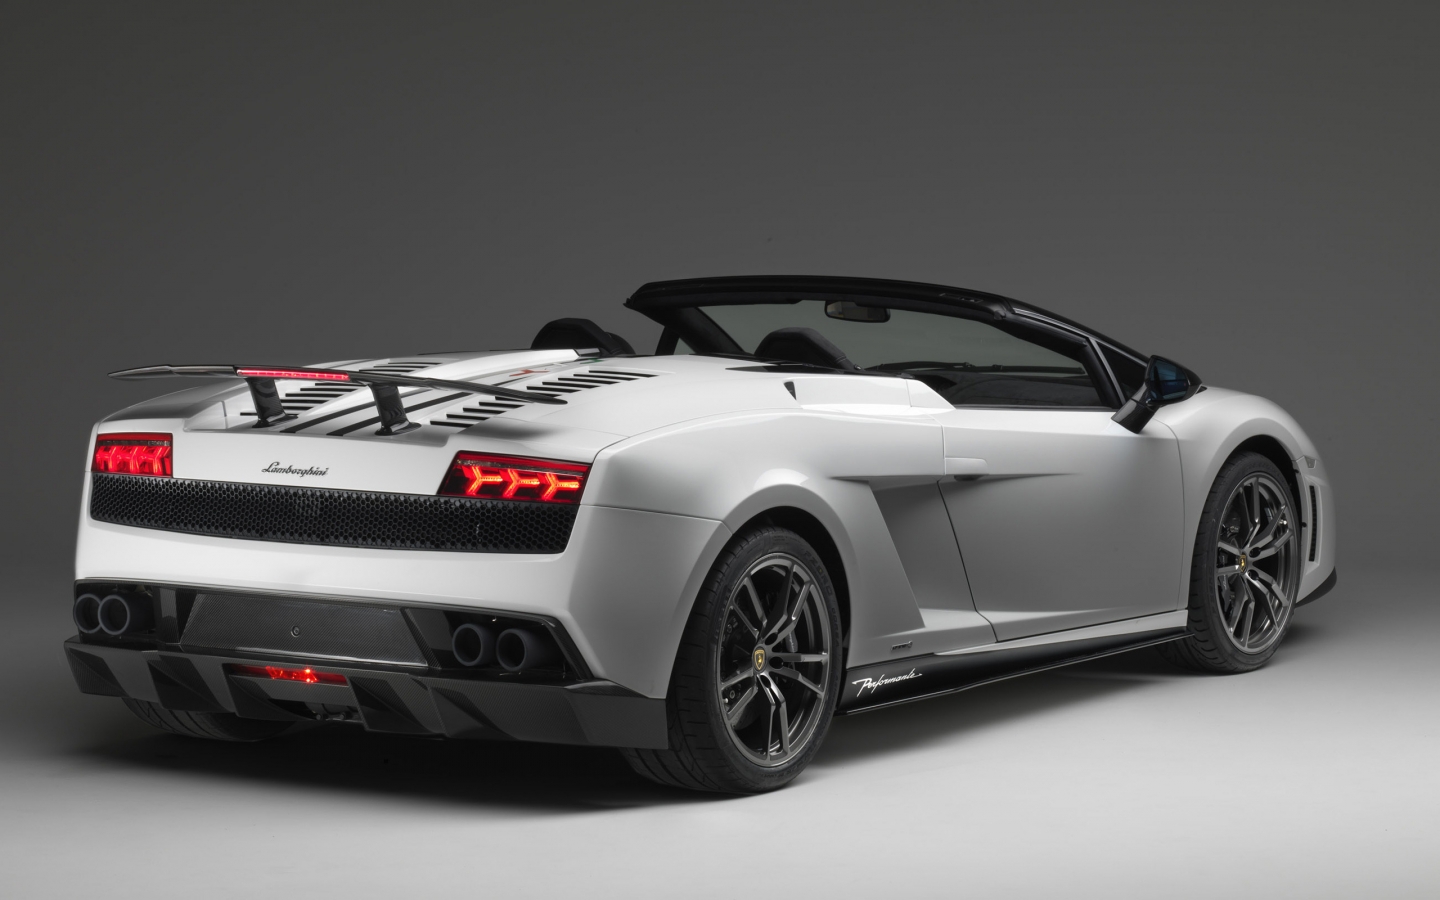 Lamborghini Gallardo LP 570 4 Spyder for 1440 x 900 widescreen resolution